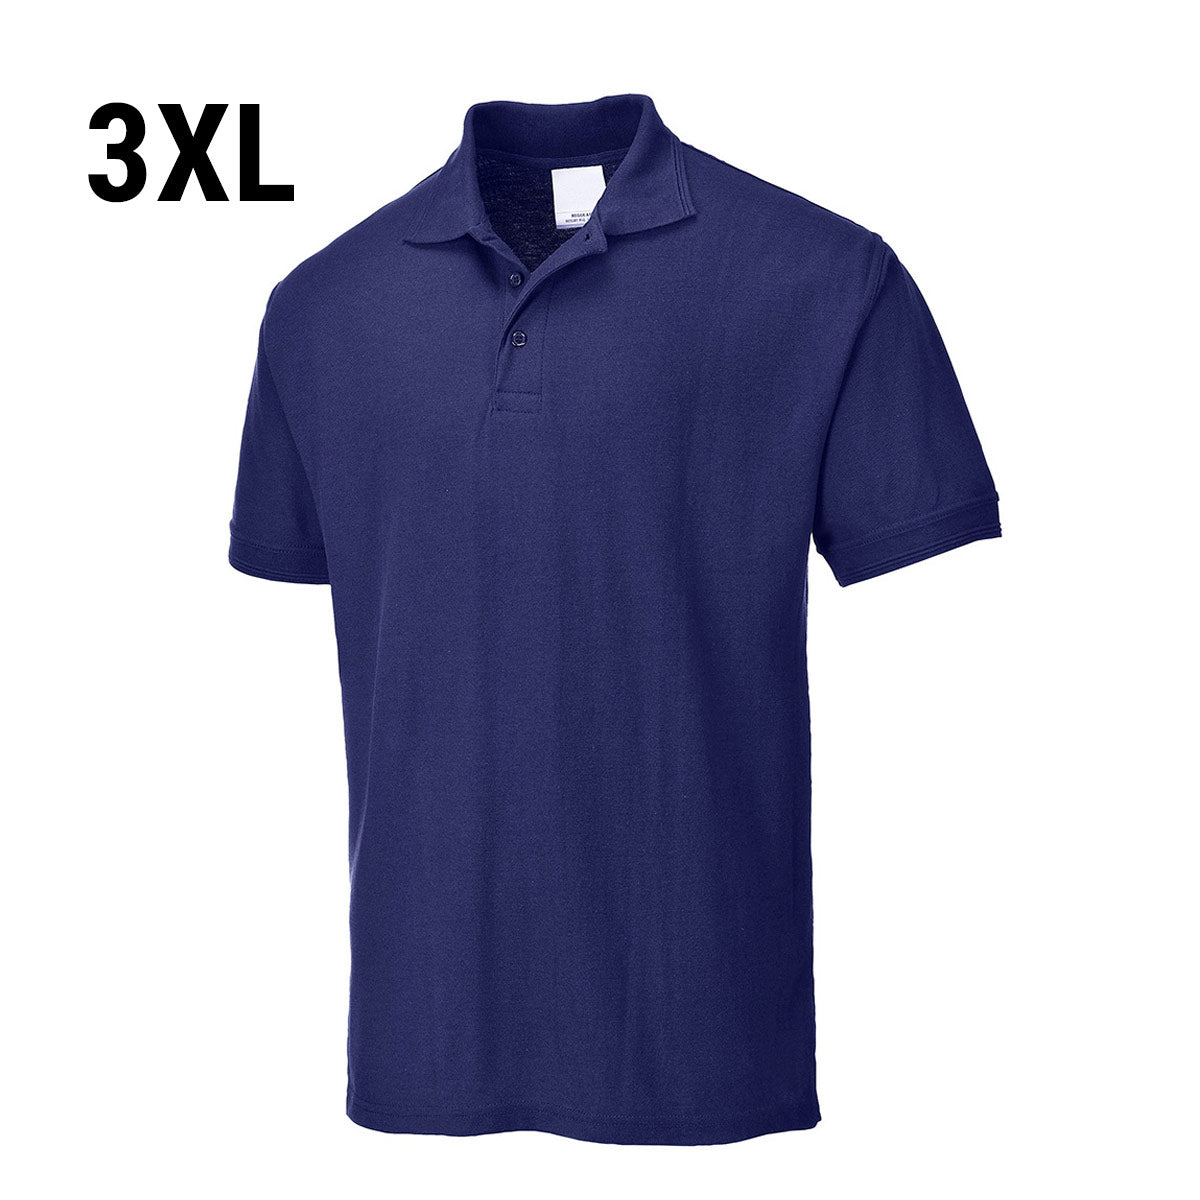 Polo shirt til mænd - Marine blå - Størrelse: 3XL